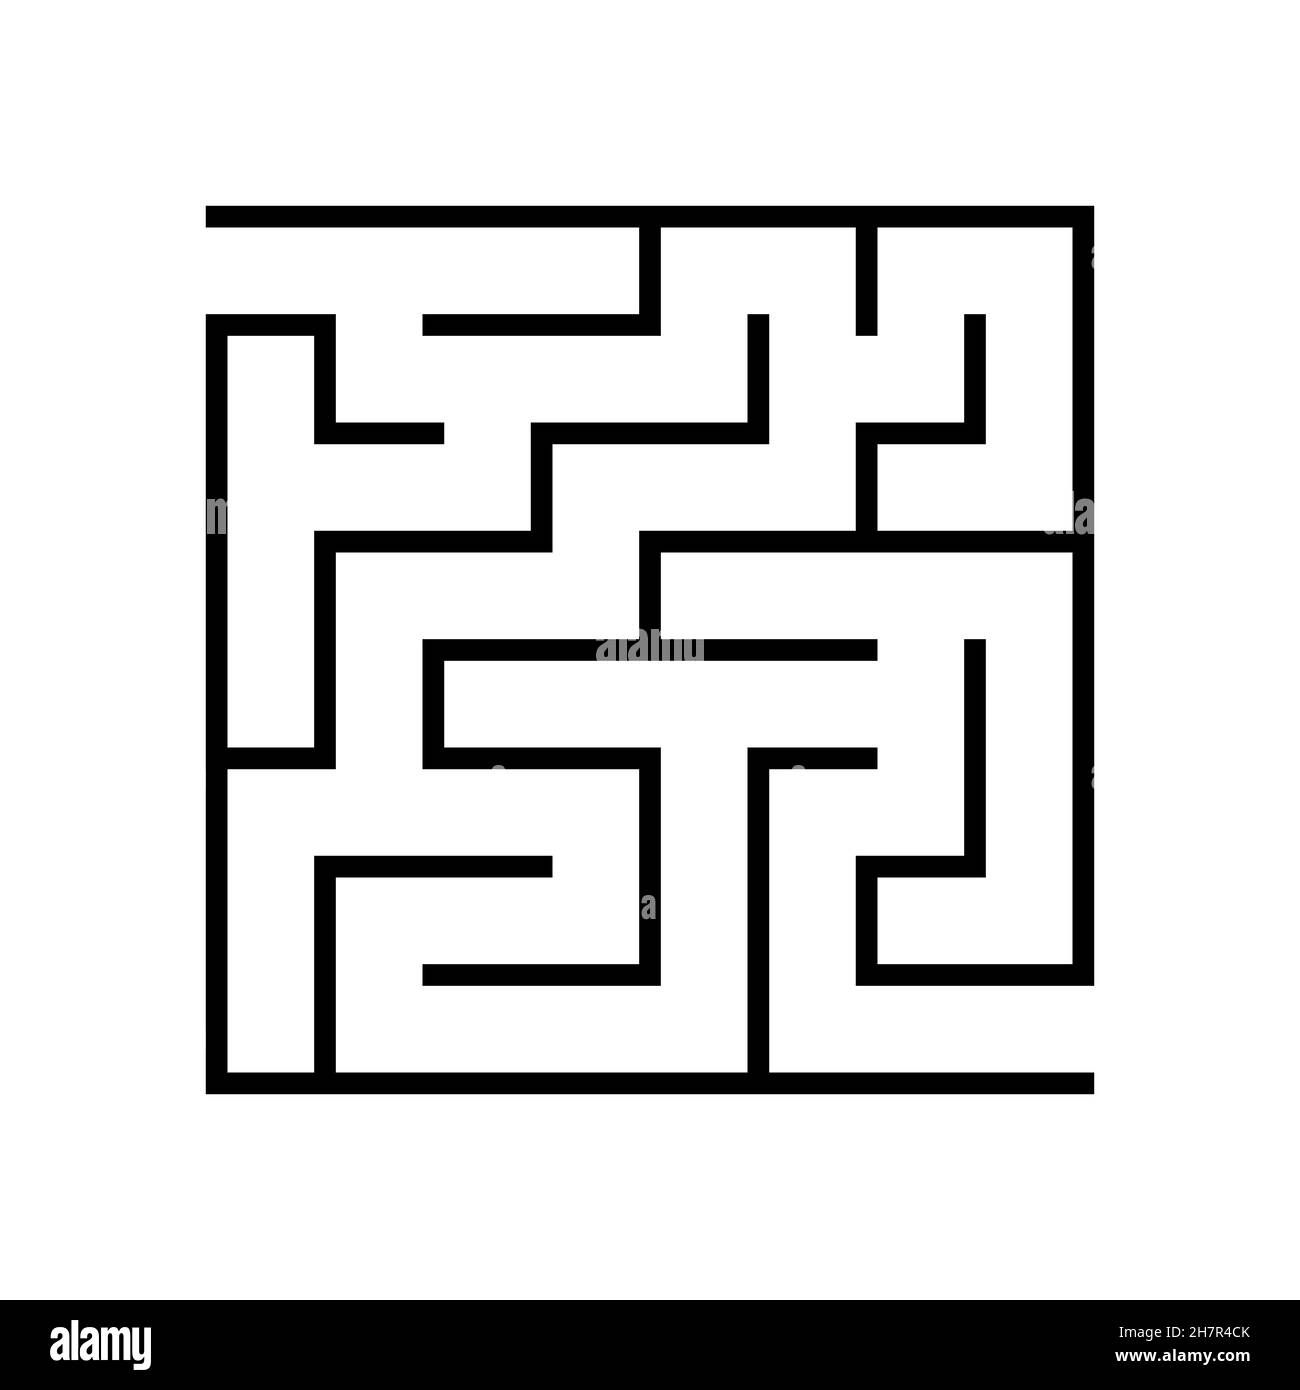 Labyrinthe de jeux logiques éducatifs pour les enfants.Trouver la bonne voie.Conception de labyrinthe ou de puzzle.Illustration vectorielle. Illustration de Vecteur